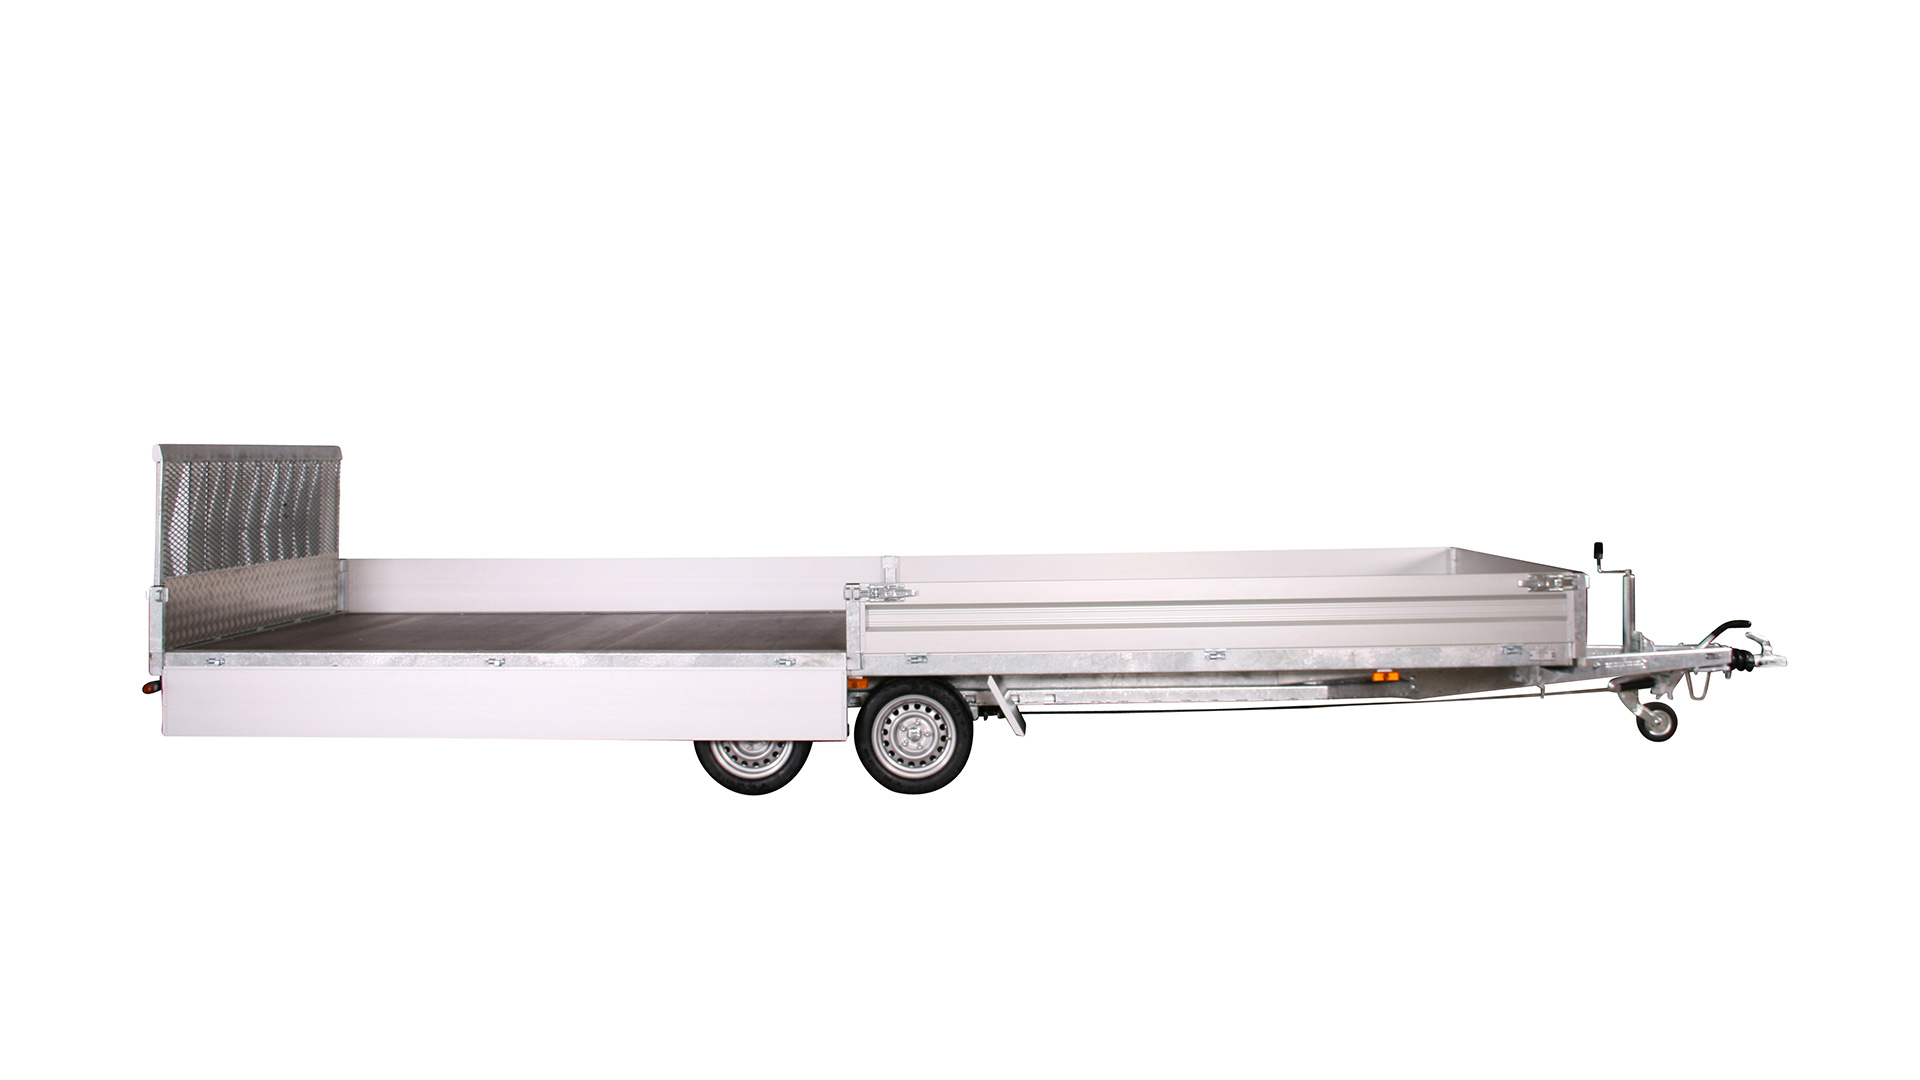 Variant PKW Anhänger Universaltransporter 3521 U6 - kippbar3500 kg, Ladefläche 6,20 x 2,10 m, mit Bordwände